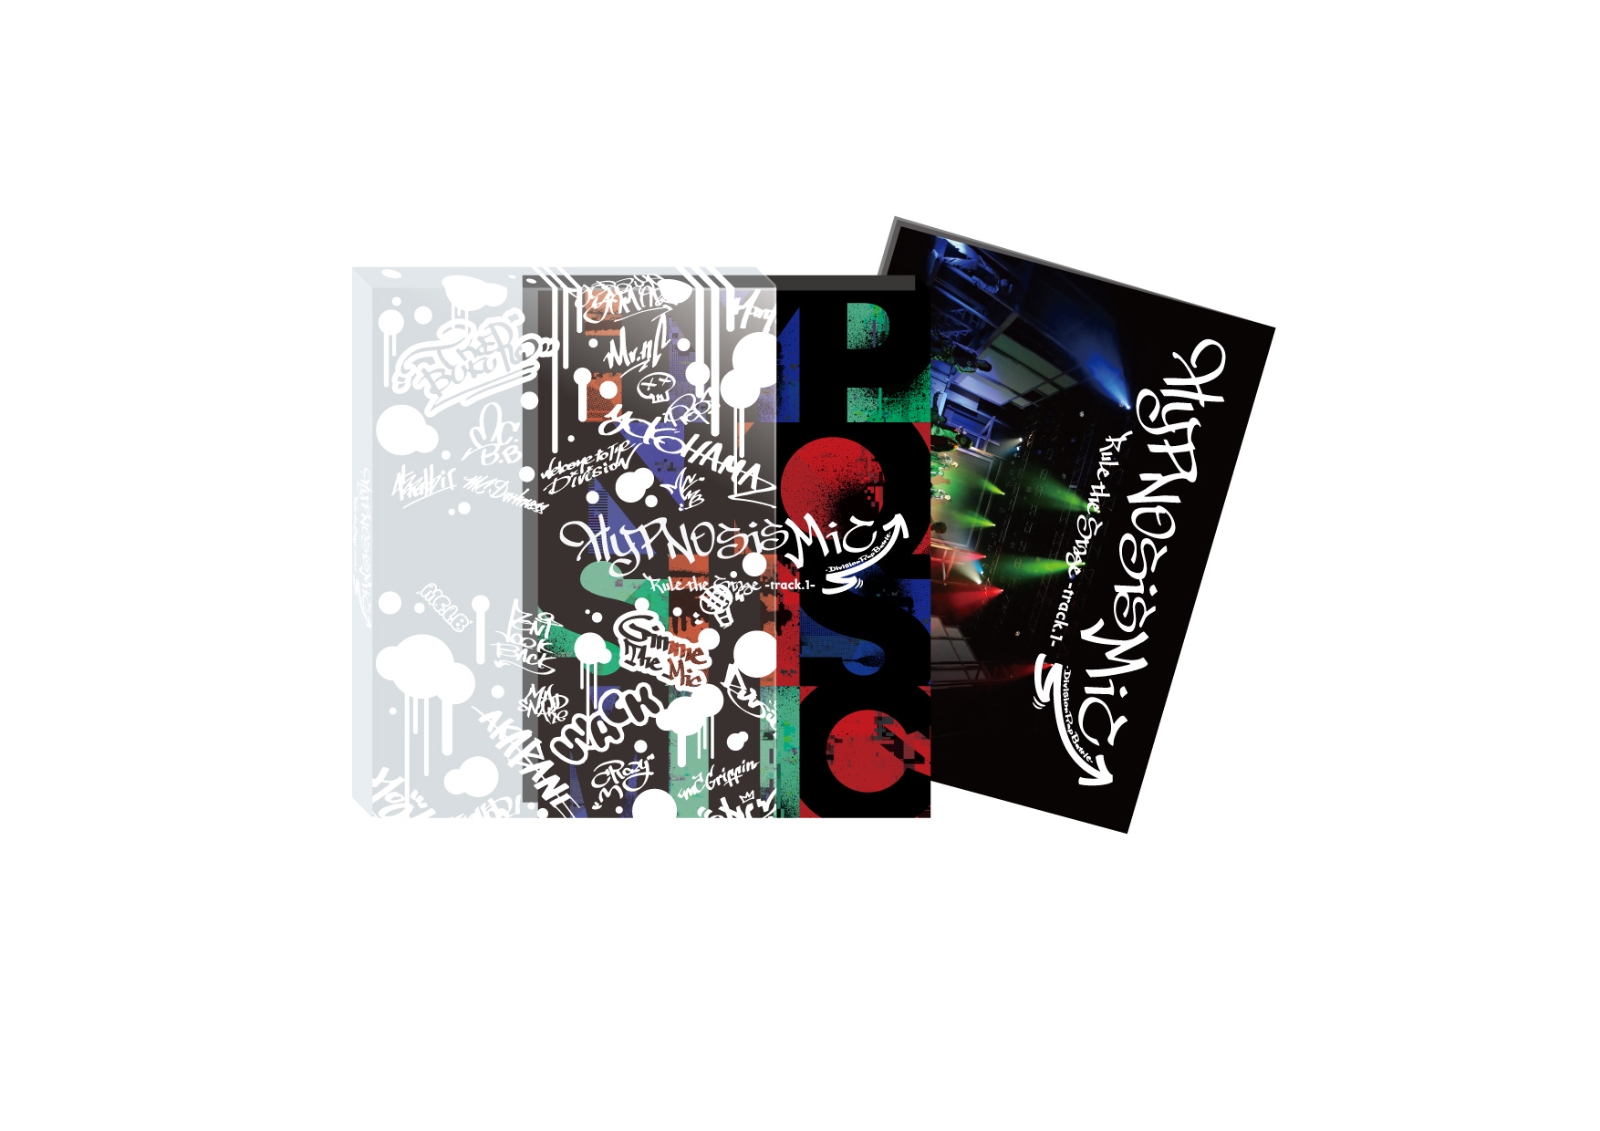 『ヒプノシスマイクーDivisionRapBattle-』RuletheStage-track.1-初回限定版DVD[高野洸]